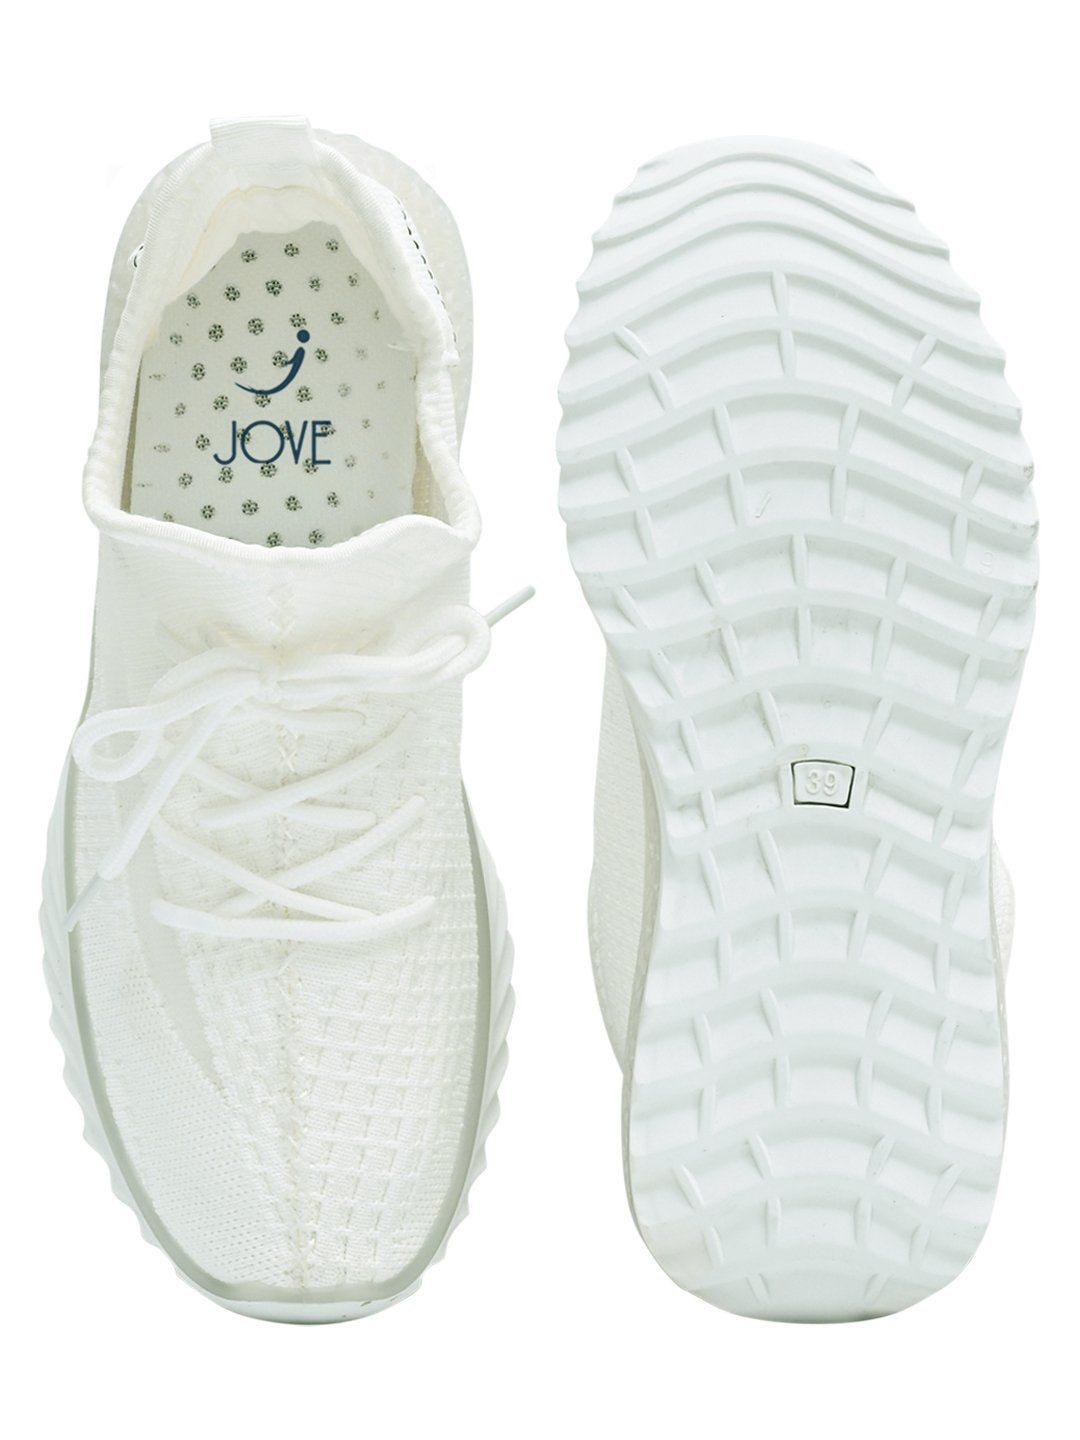 Footwear, Women Footwear, White Sneakers